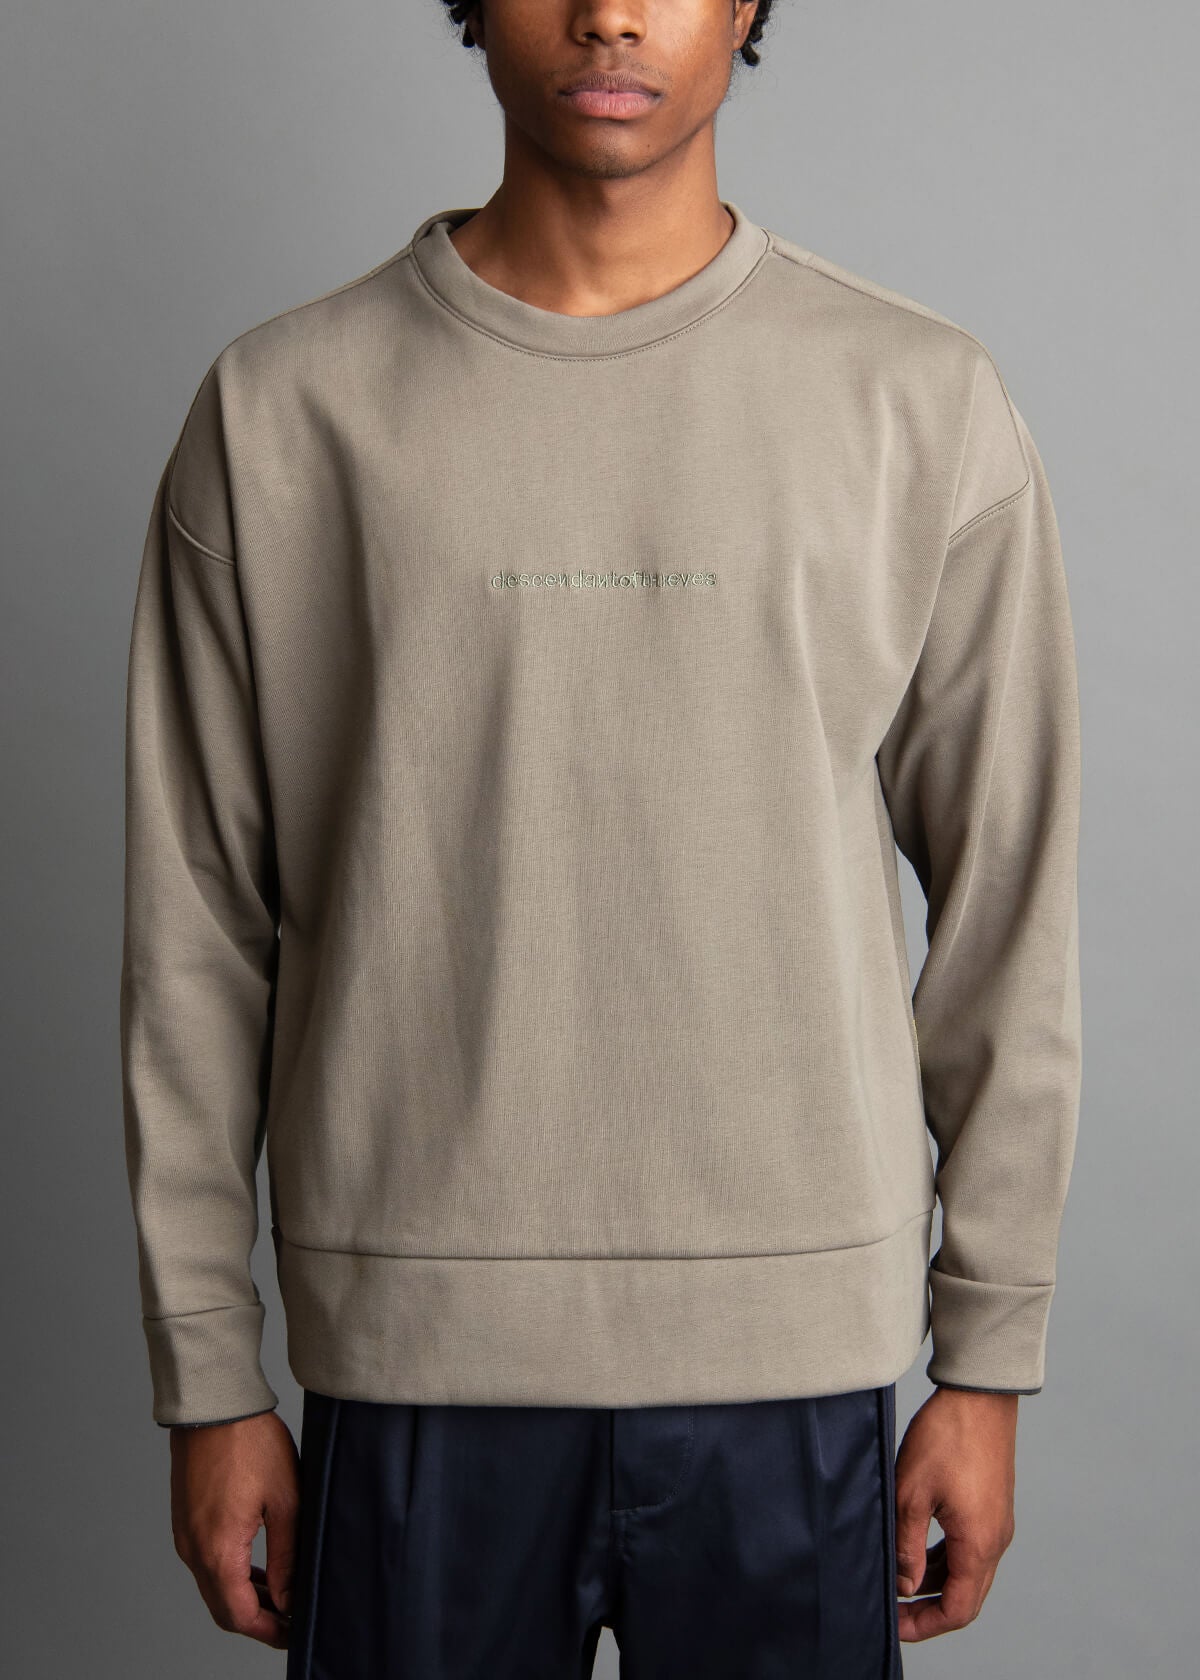 olive crew neck sweatshirt for men